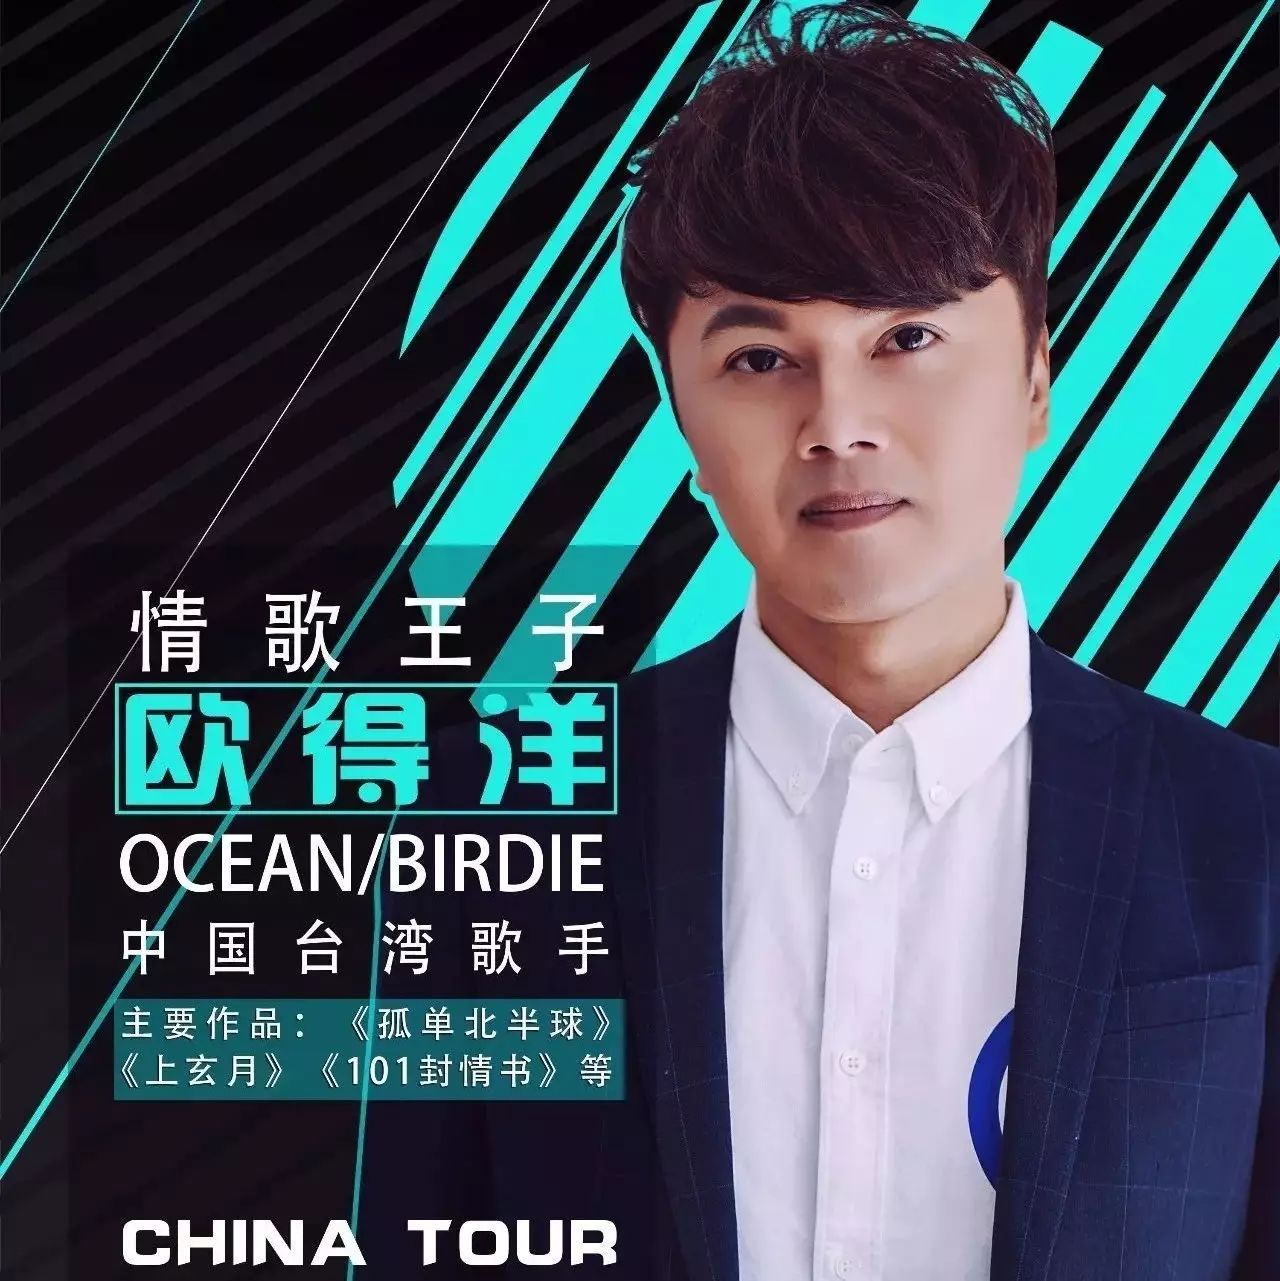 中国台湾歌手 欧得洋 情歌归来,再度开启大陆巡演之旅!